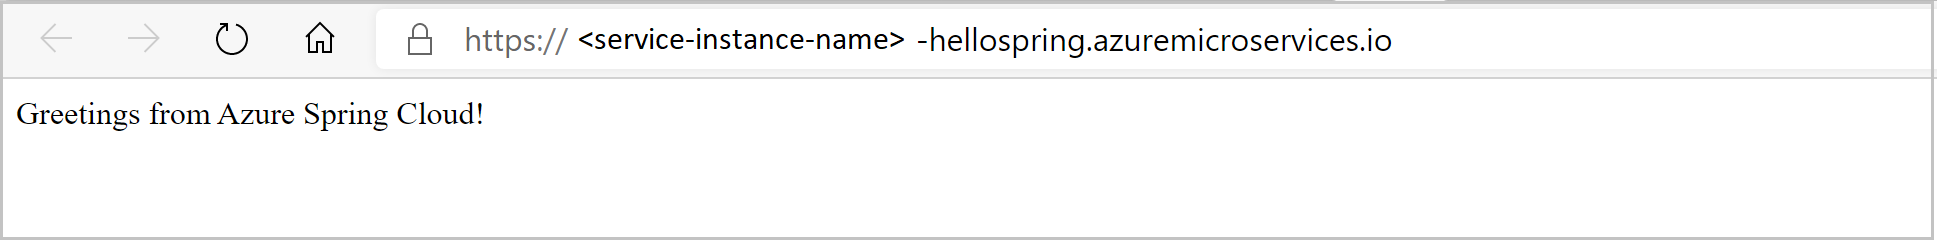 ブラウザーに表示された hello spring アプリのスクリーンショット。